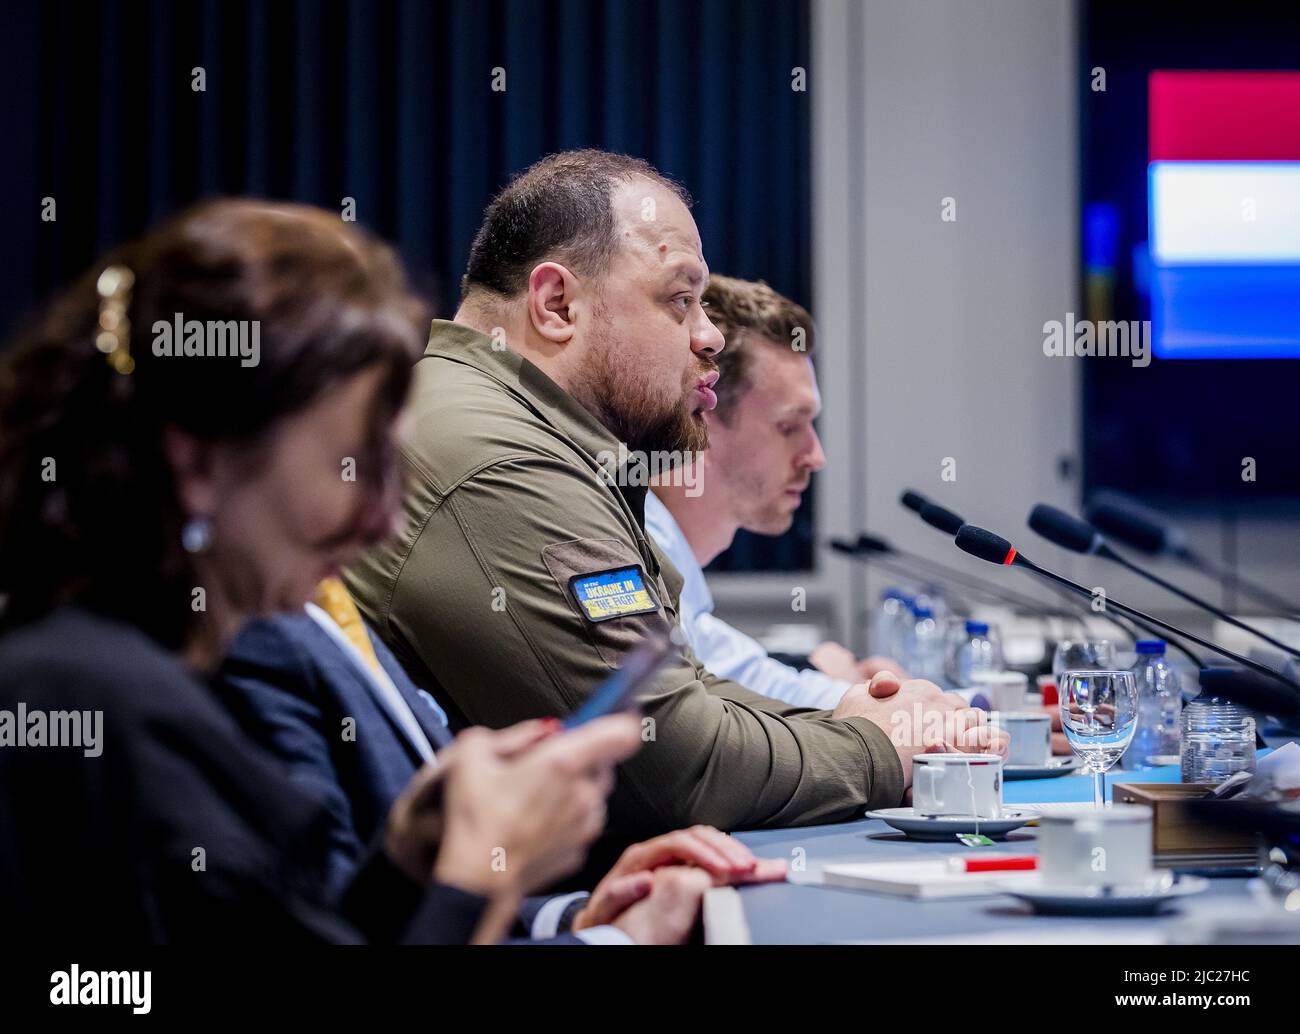 2022-06-09 15:07:08 DEN HAAG - Sprecher des ukrainischen parlaments Ruslan Stefanchuk während seines Besuchs im Senat. ANP REMKO DE WAAL niederlande Out - belgien Out Stockfoto